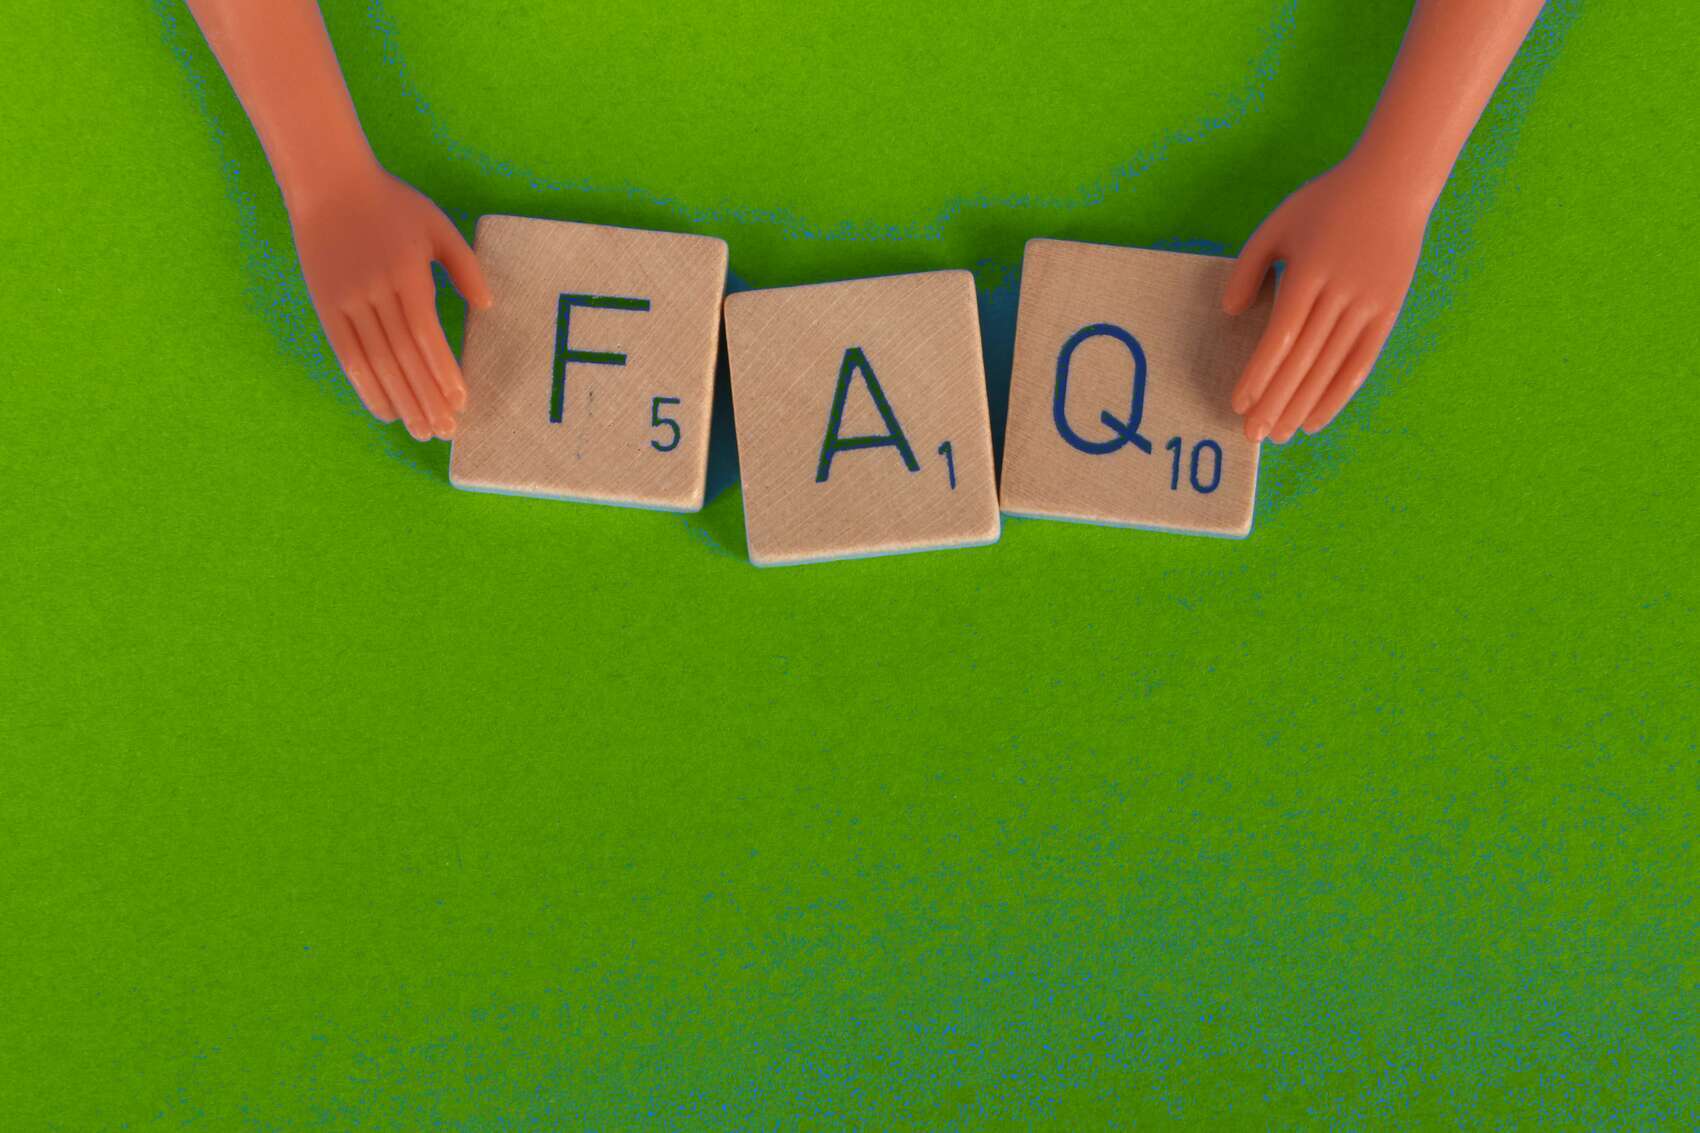 FAQ Scrabble tiles green